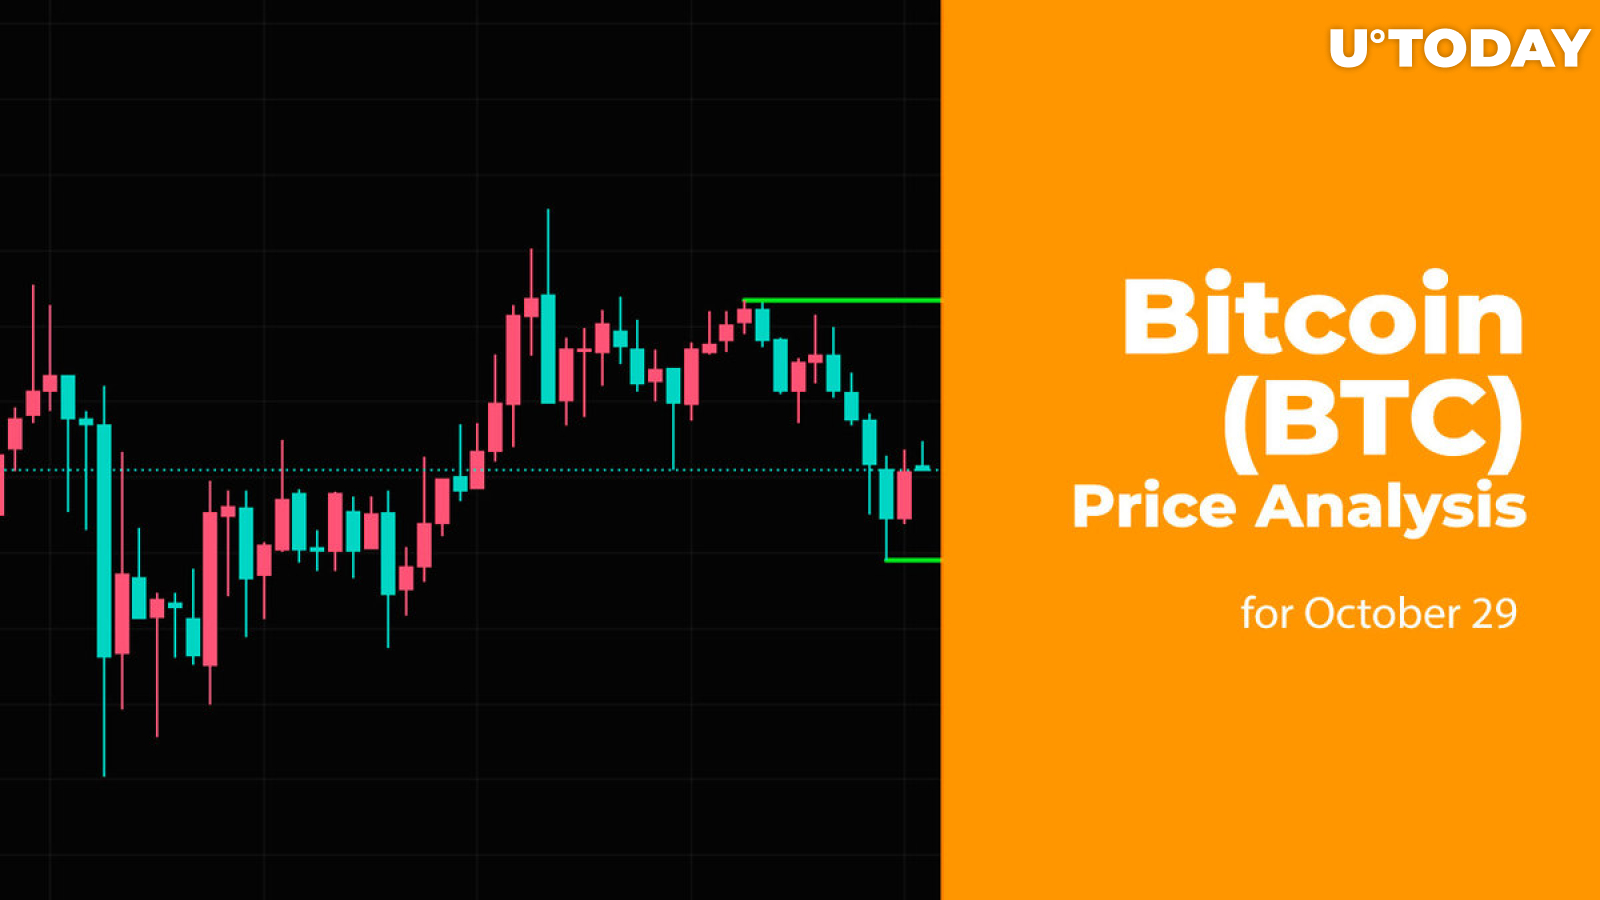 Bitcoin (BTC) Price Analysis for October 29